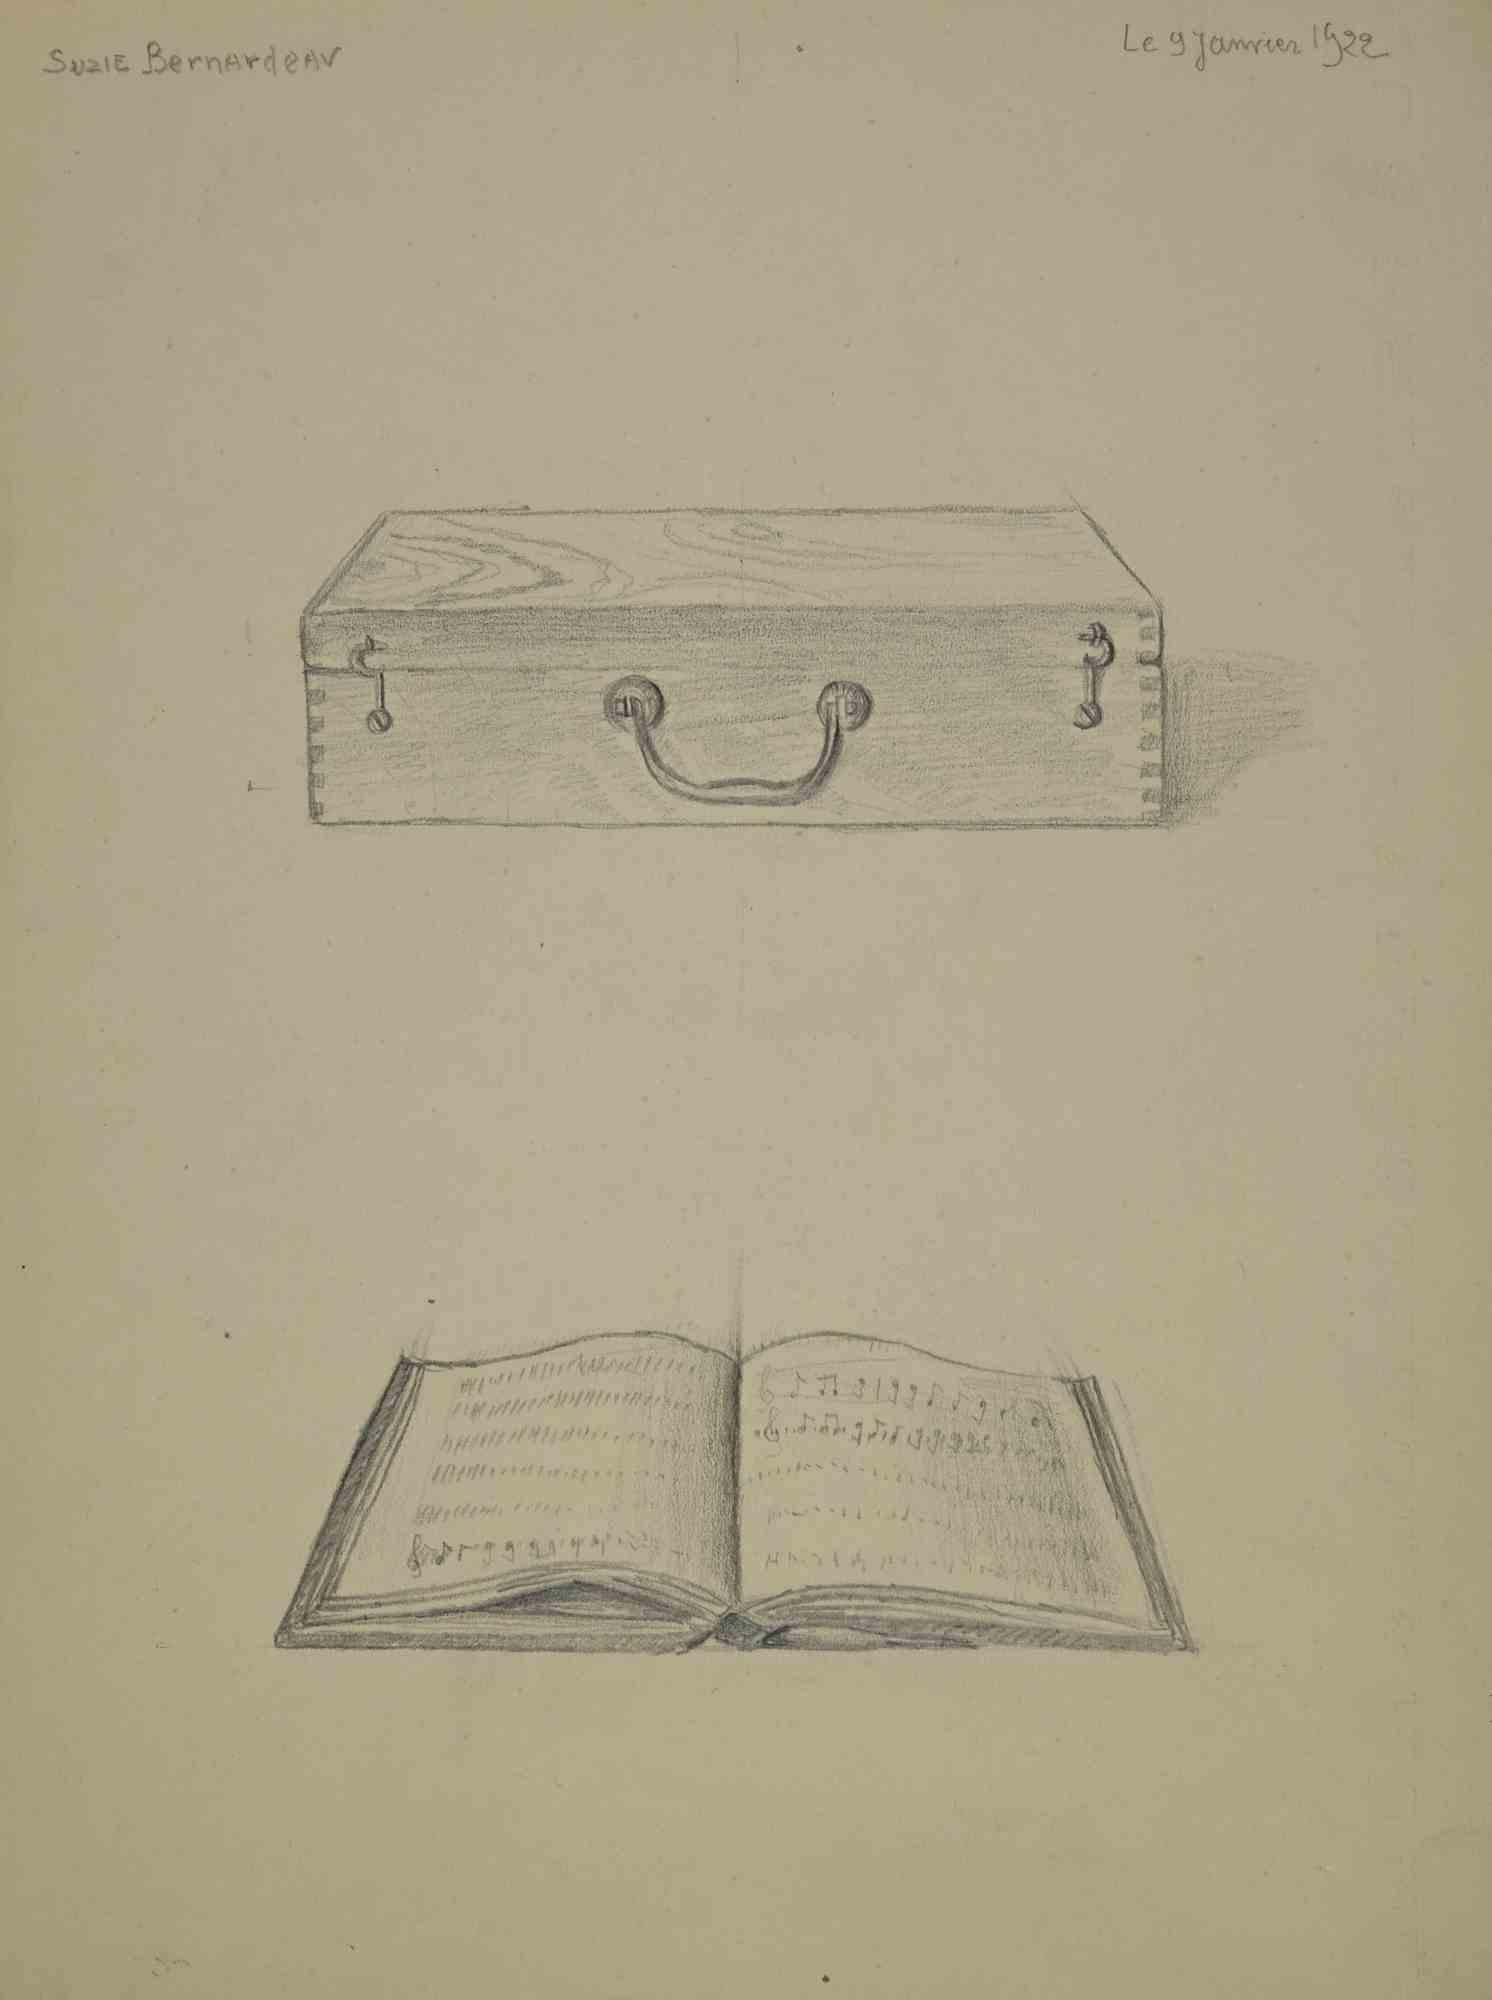 Porte-documents est une œuvre d'art réalisée par Suzie Bernardeau le 9 janvier 1922.

Dessin au crayon.

Parfait état.

Signé et daté.